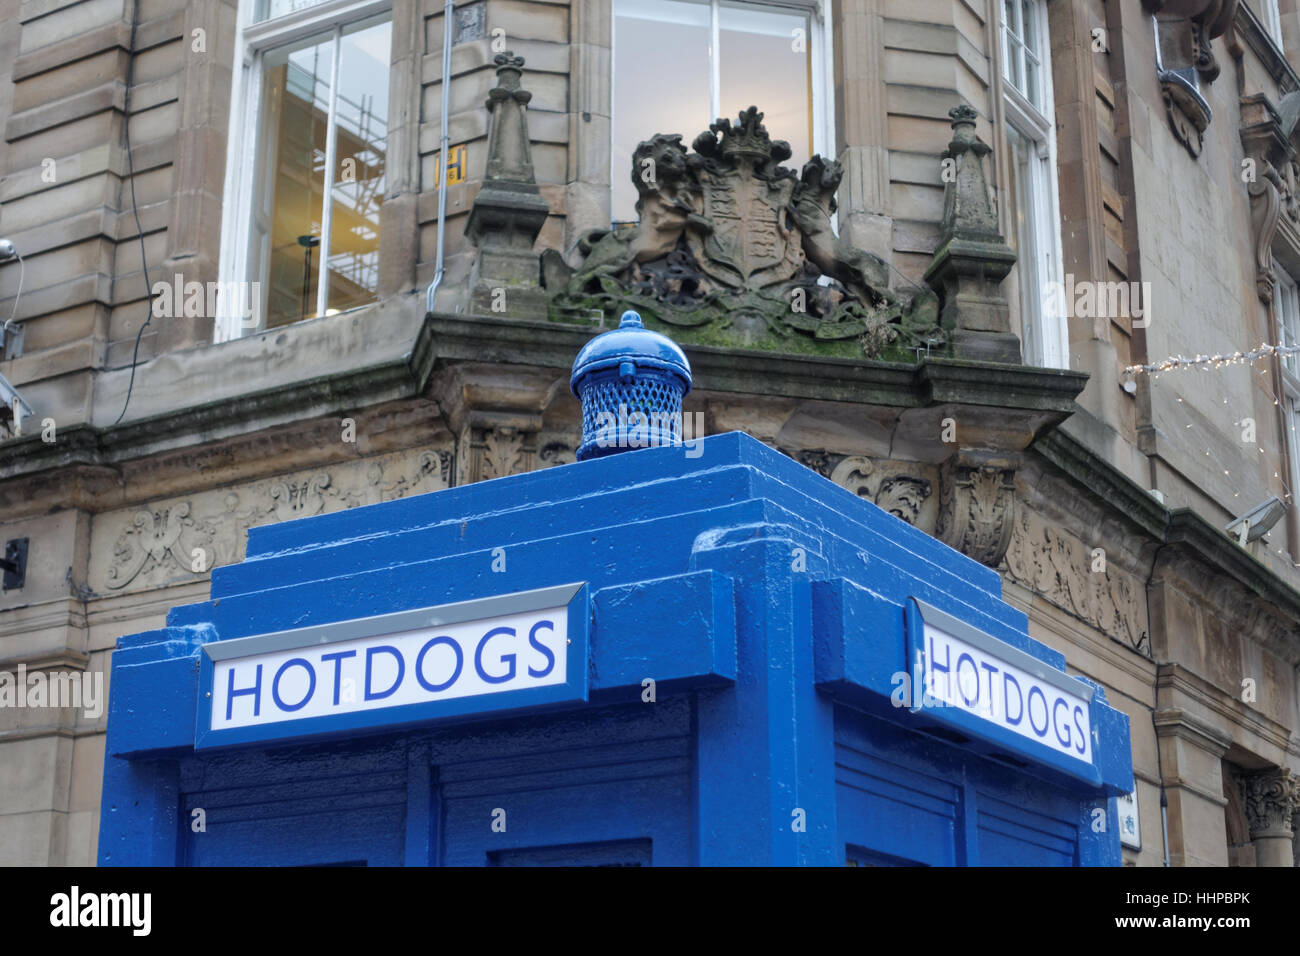 Hotdog Restaurant pop up Polizei box Dr Who Website tardis für die Ivy Glasgow Weltberühmten celeb Kneipe Eröffnung 2017 geplant Stockfoto